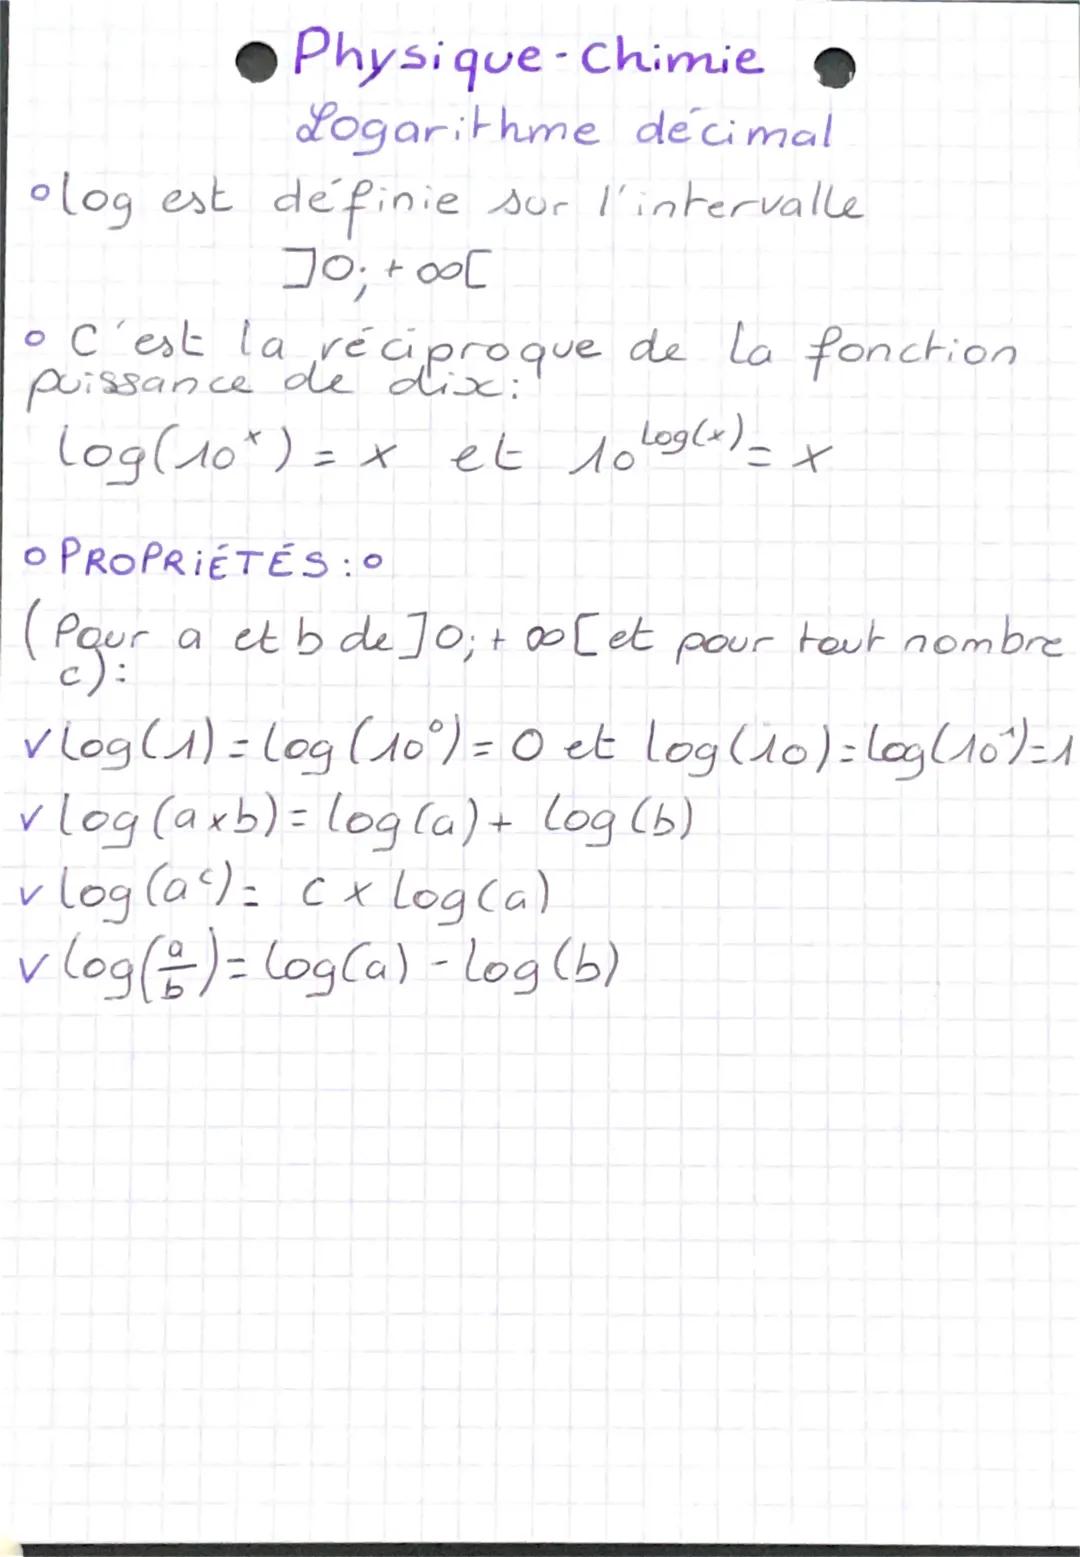 Physique-Chimie
Logarithme decimal
olog est definie sur l'intervalle
]0; +00[
• C'est la réciproque de la fonction
puissance de dix:
log(10)